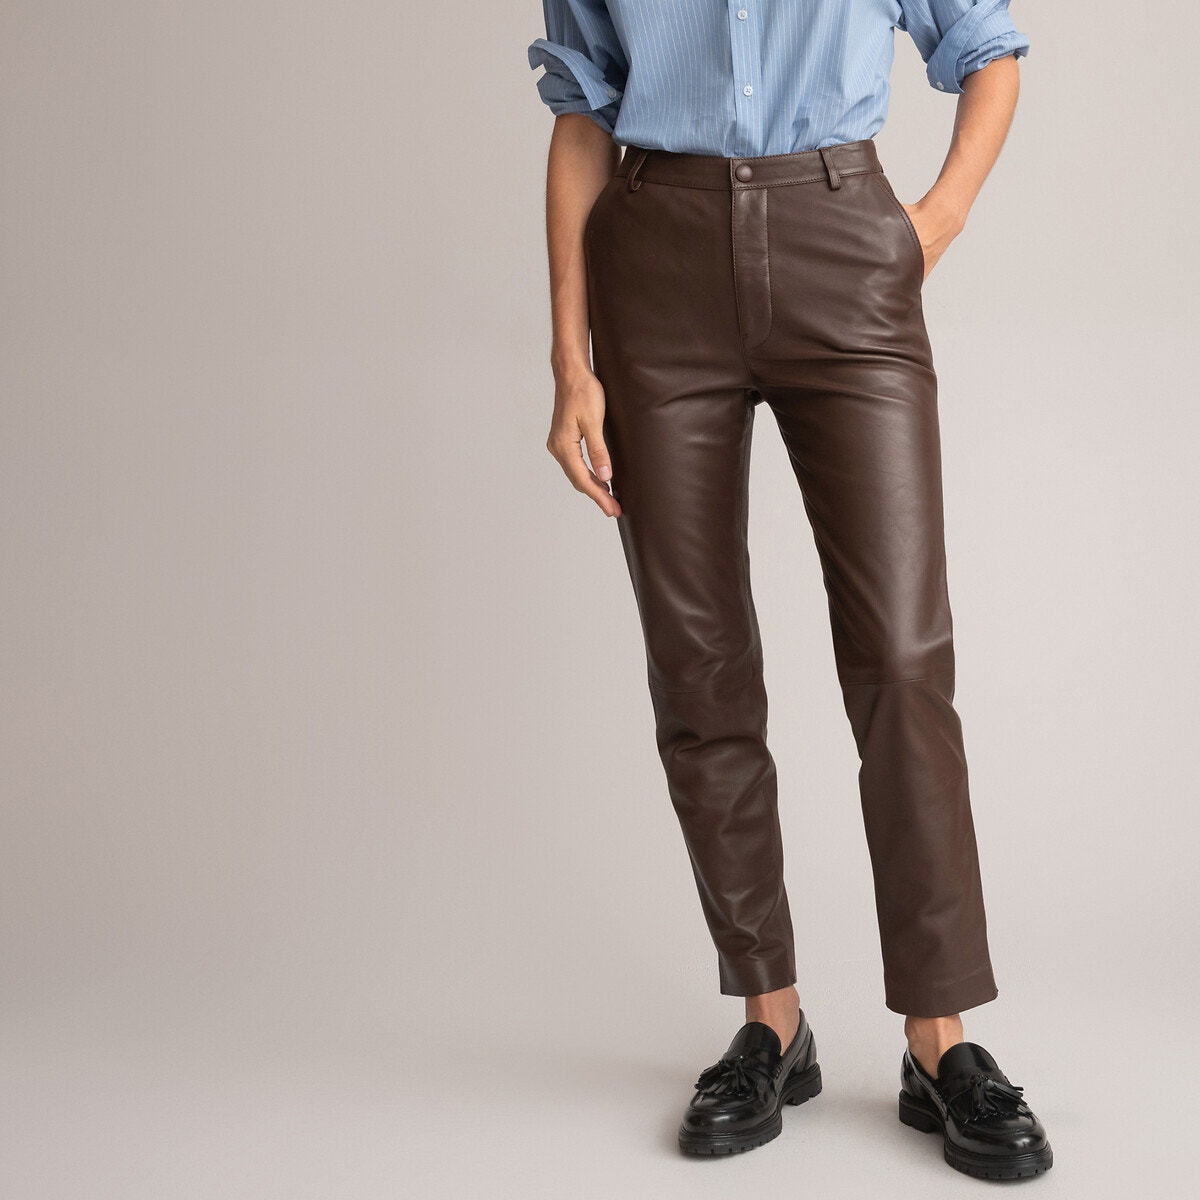 ΓΥΝΑΙΚΑ | Παντελόνια Δερμάτινο παντελόνι σε ίσια γραμμή